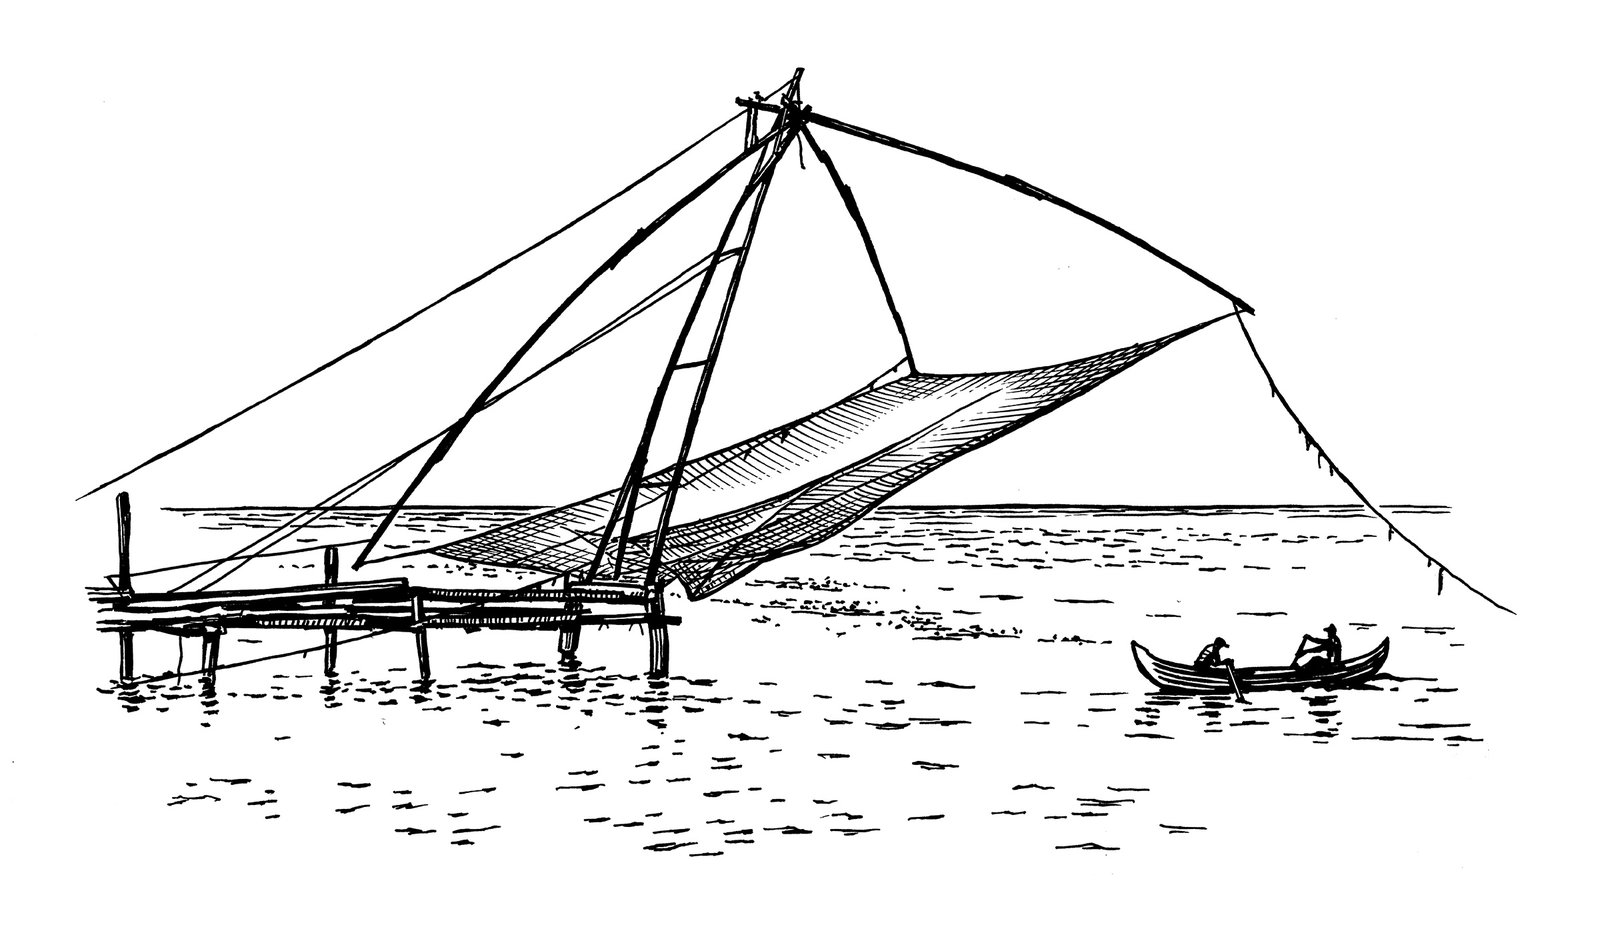 oculus-illustration-schraffur-tusche-lehrmittel-fischernetz